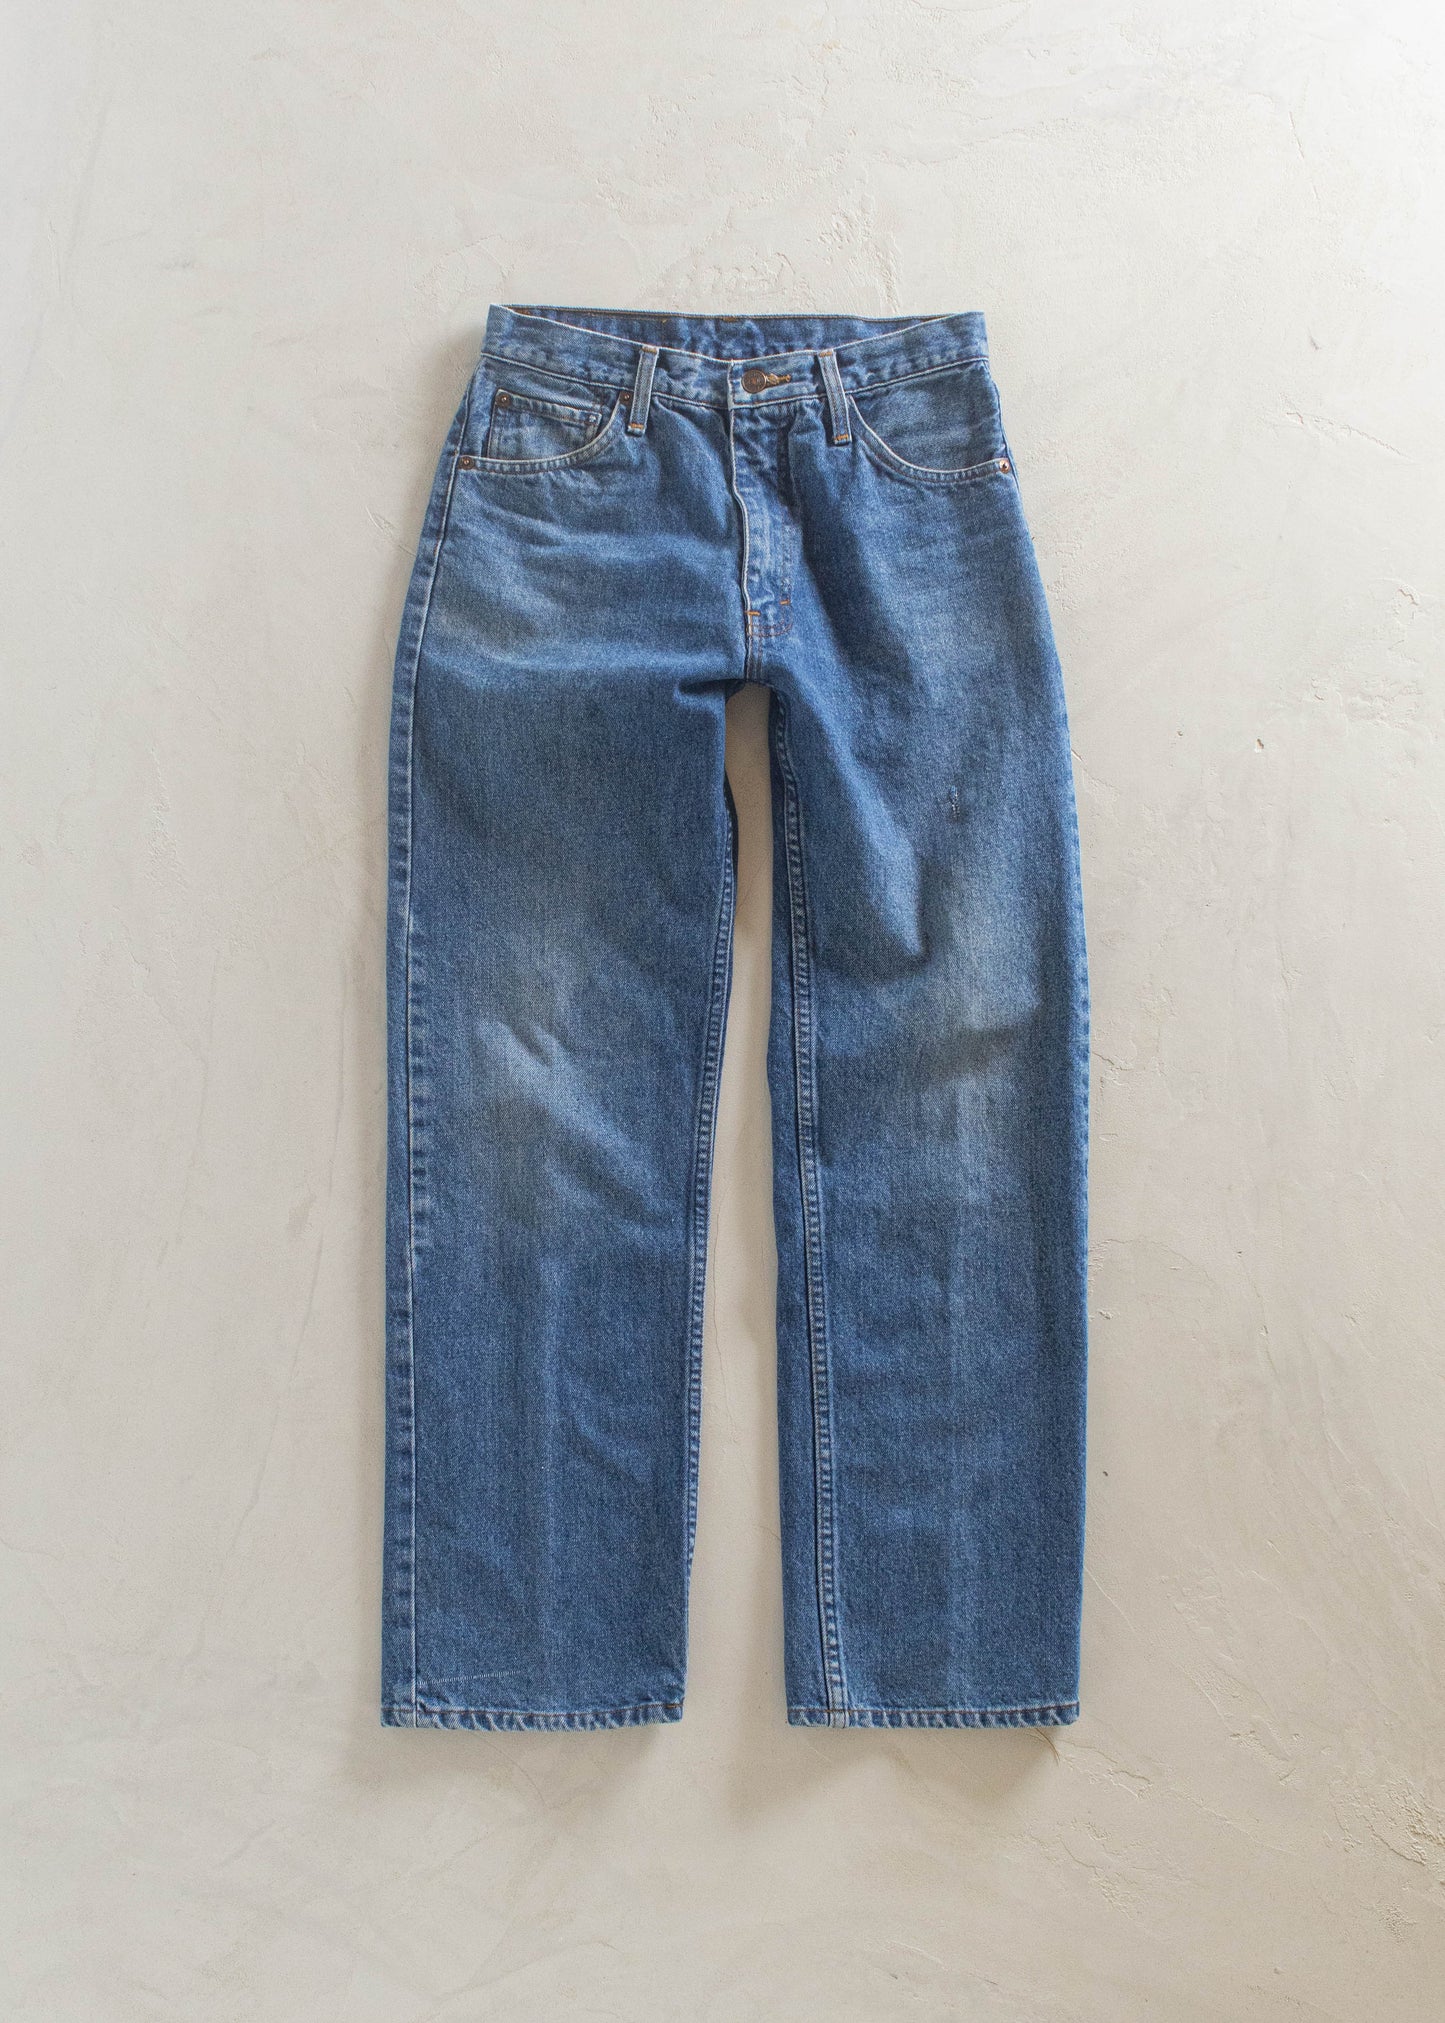 1980s Levi's 501 Midwash Jeans Size Women's 26 Men's 30